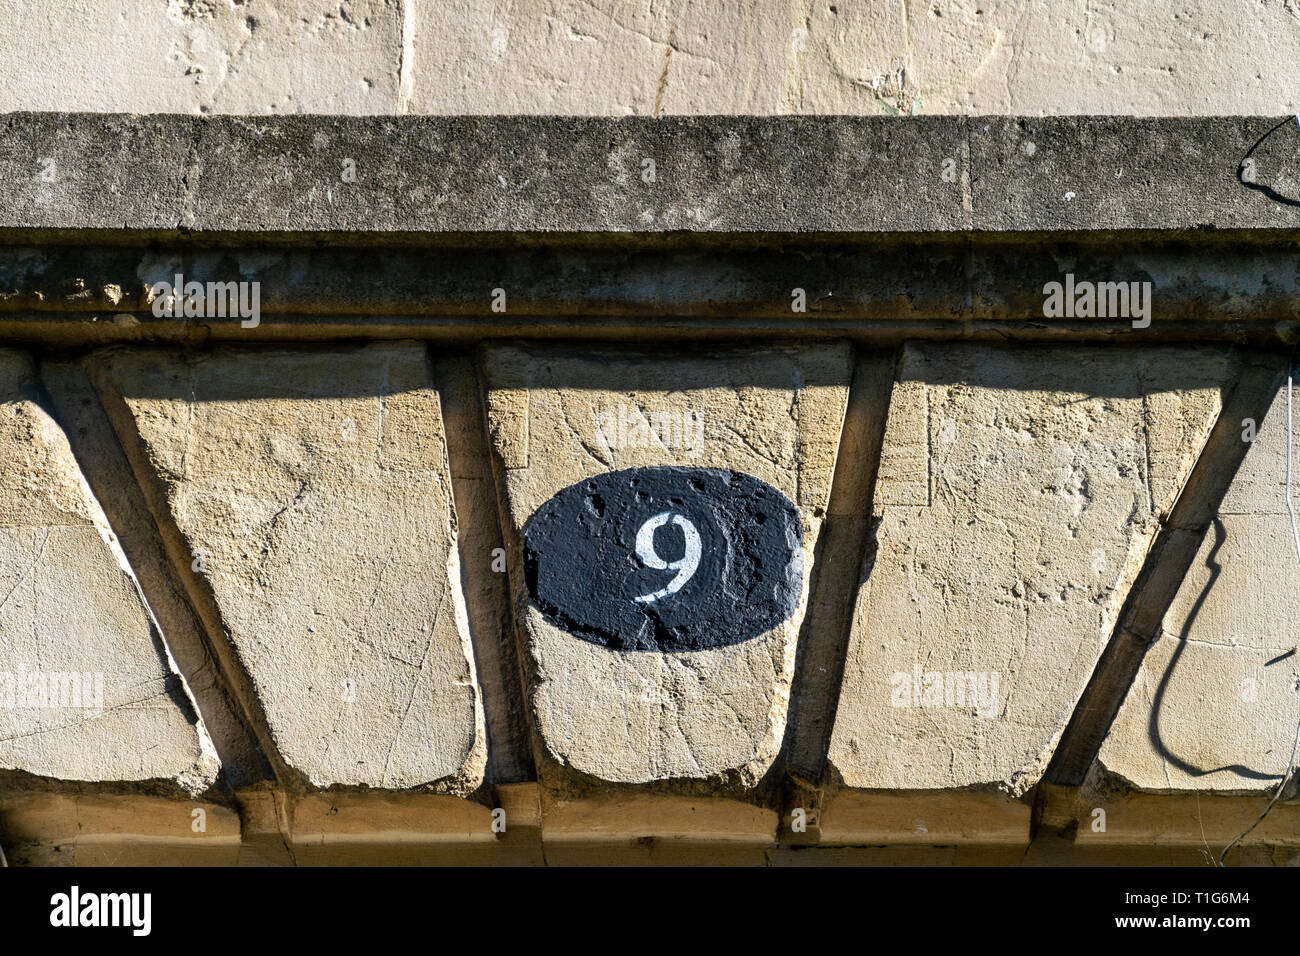 Numéro de maison neuf peint sur la pierre au-dessus d'une porte avec rustication chanfreinée Banque D'Images